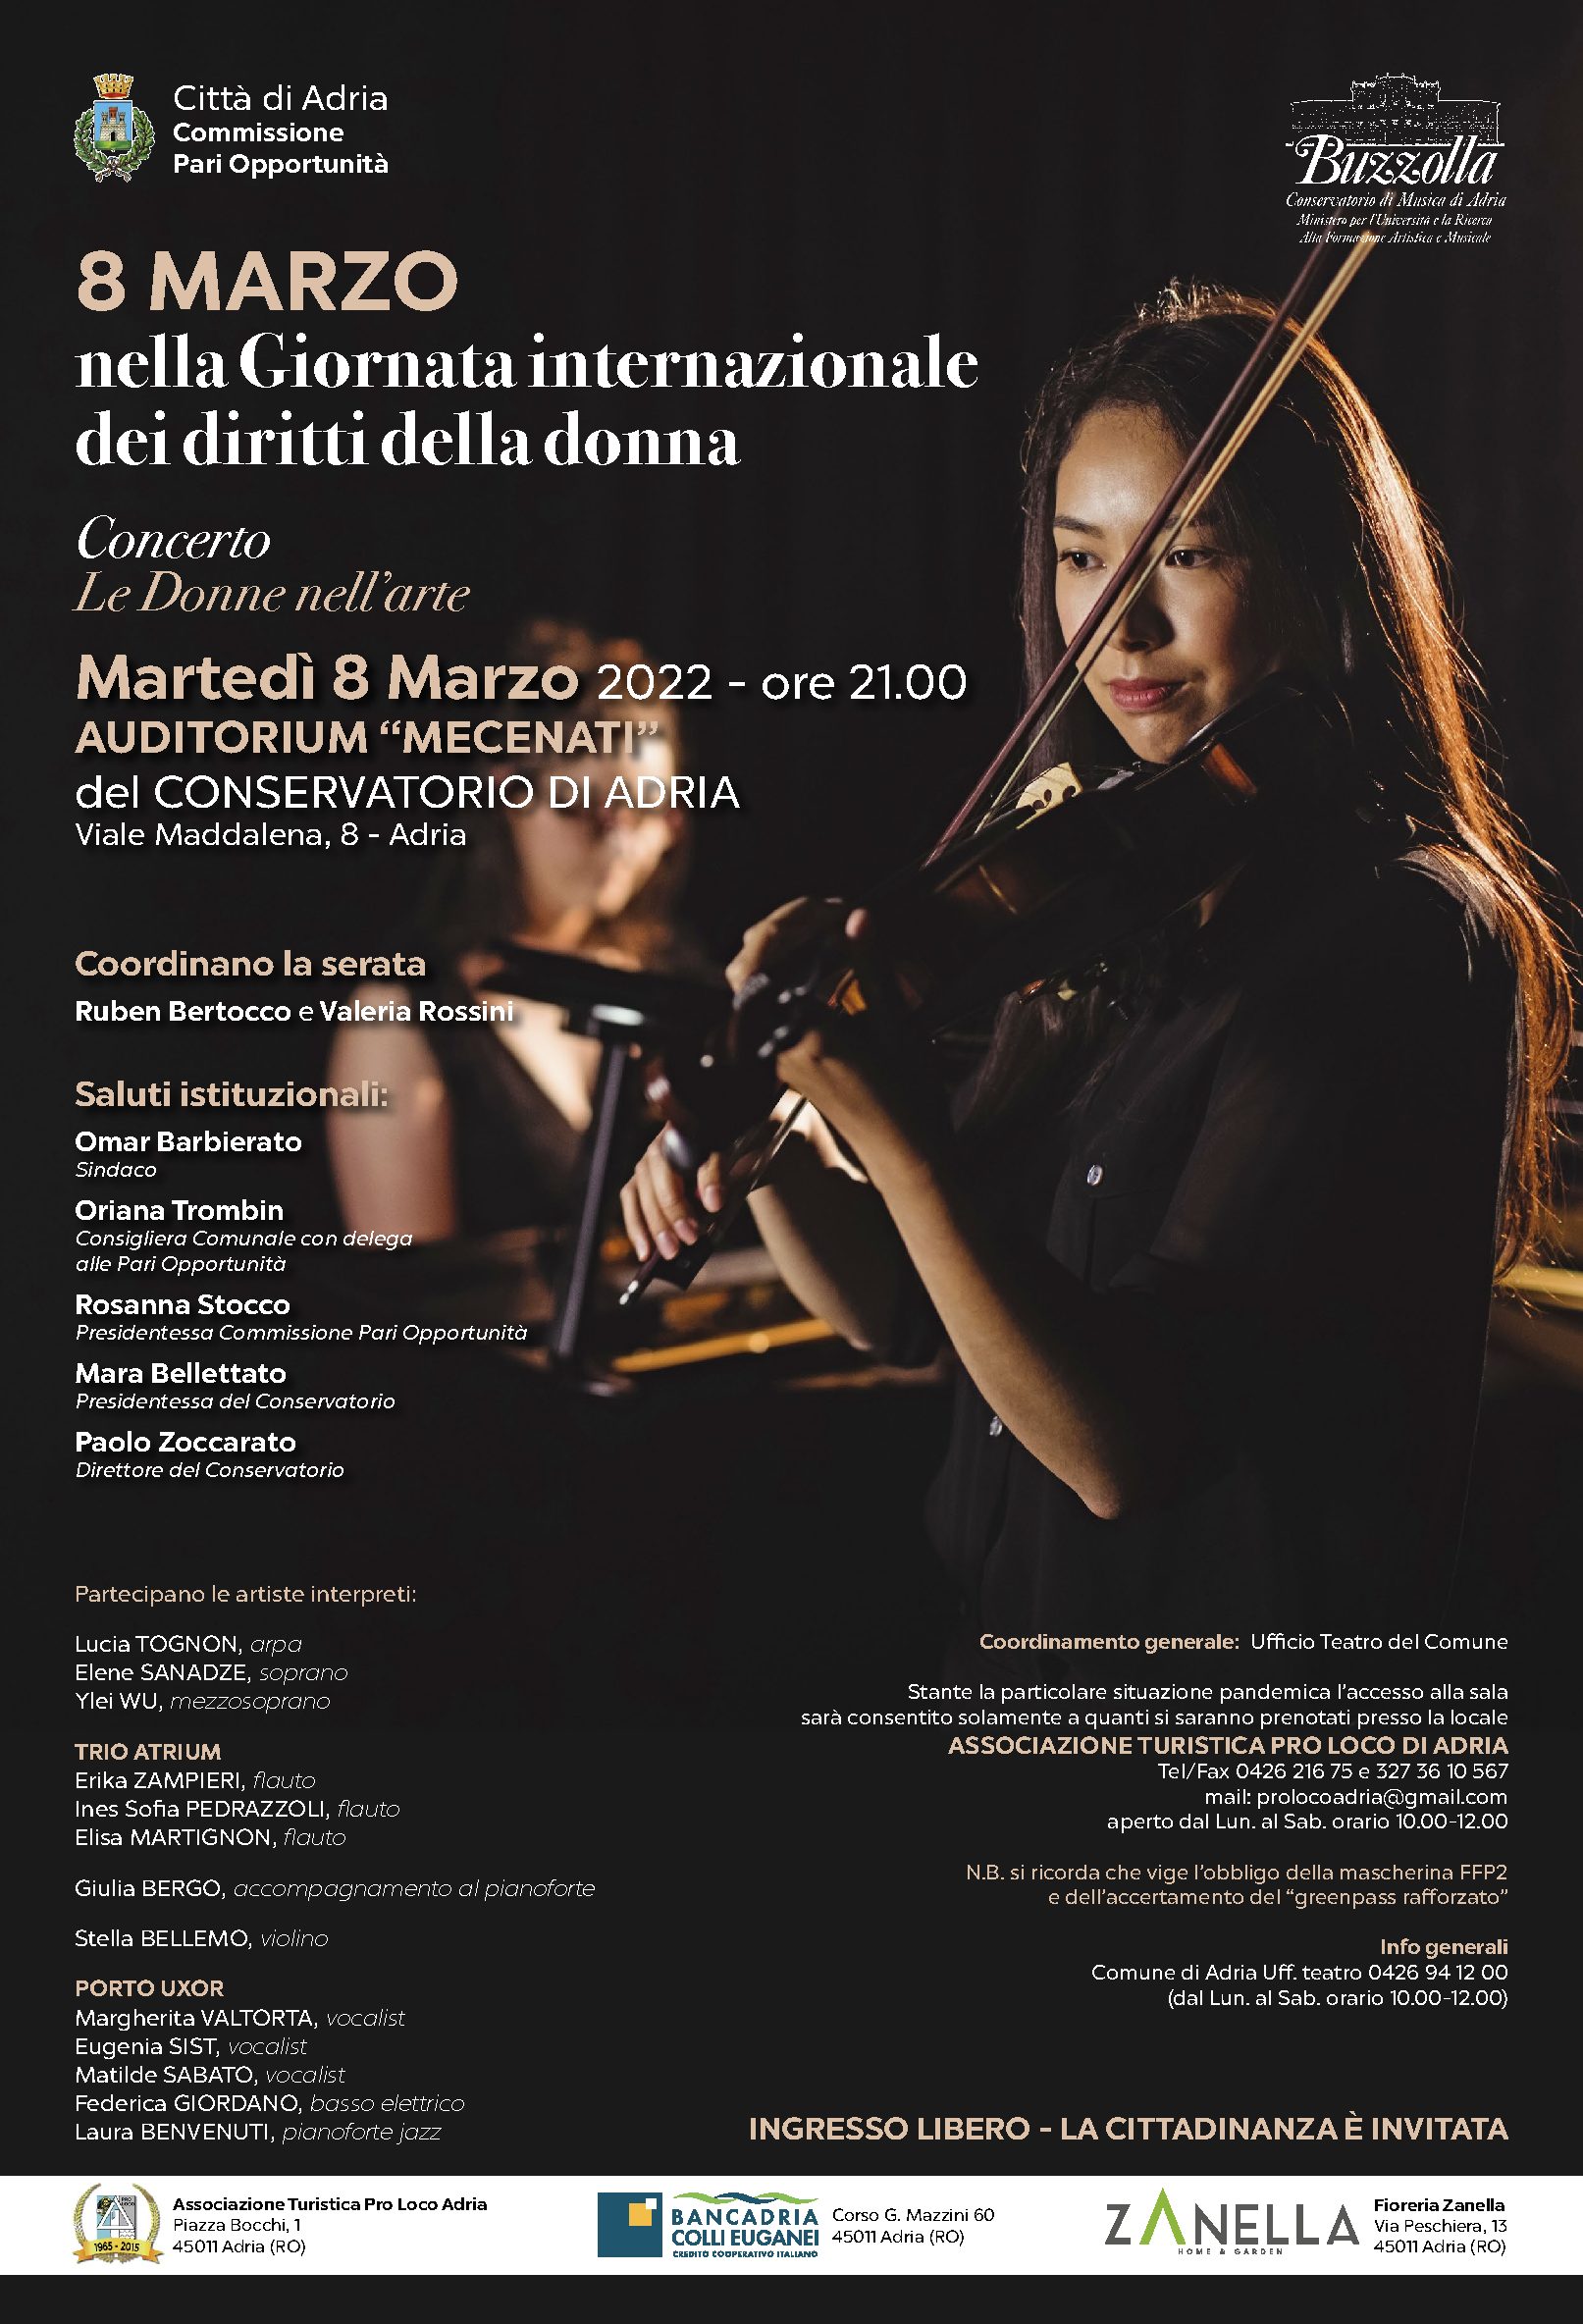 Concerto LE DONNE NELL’ARTE, 8 MARZO 2022 ore 21.00